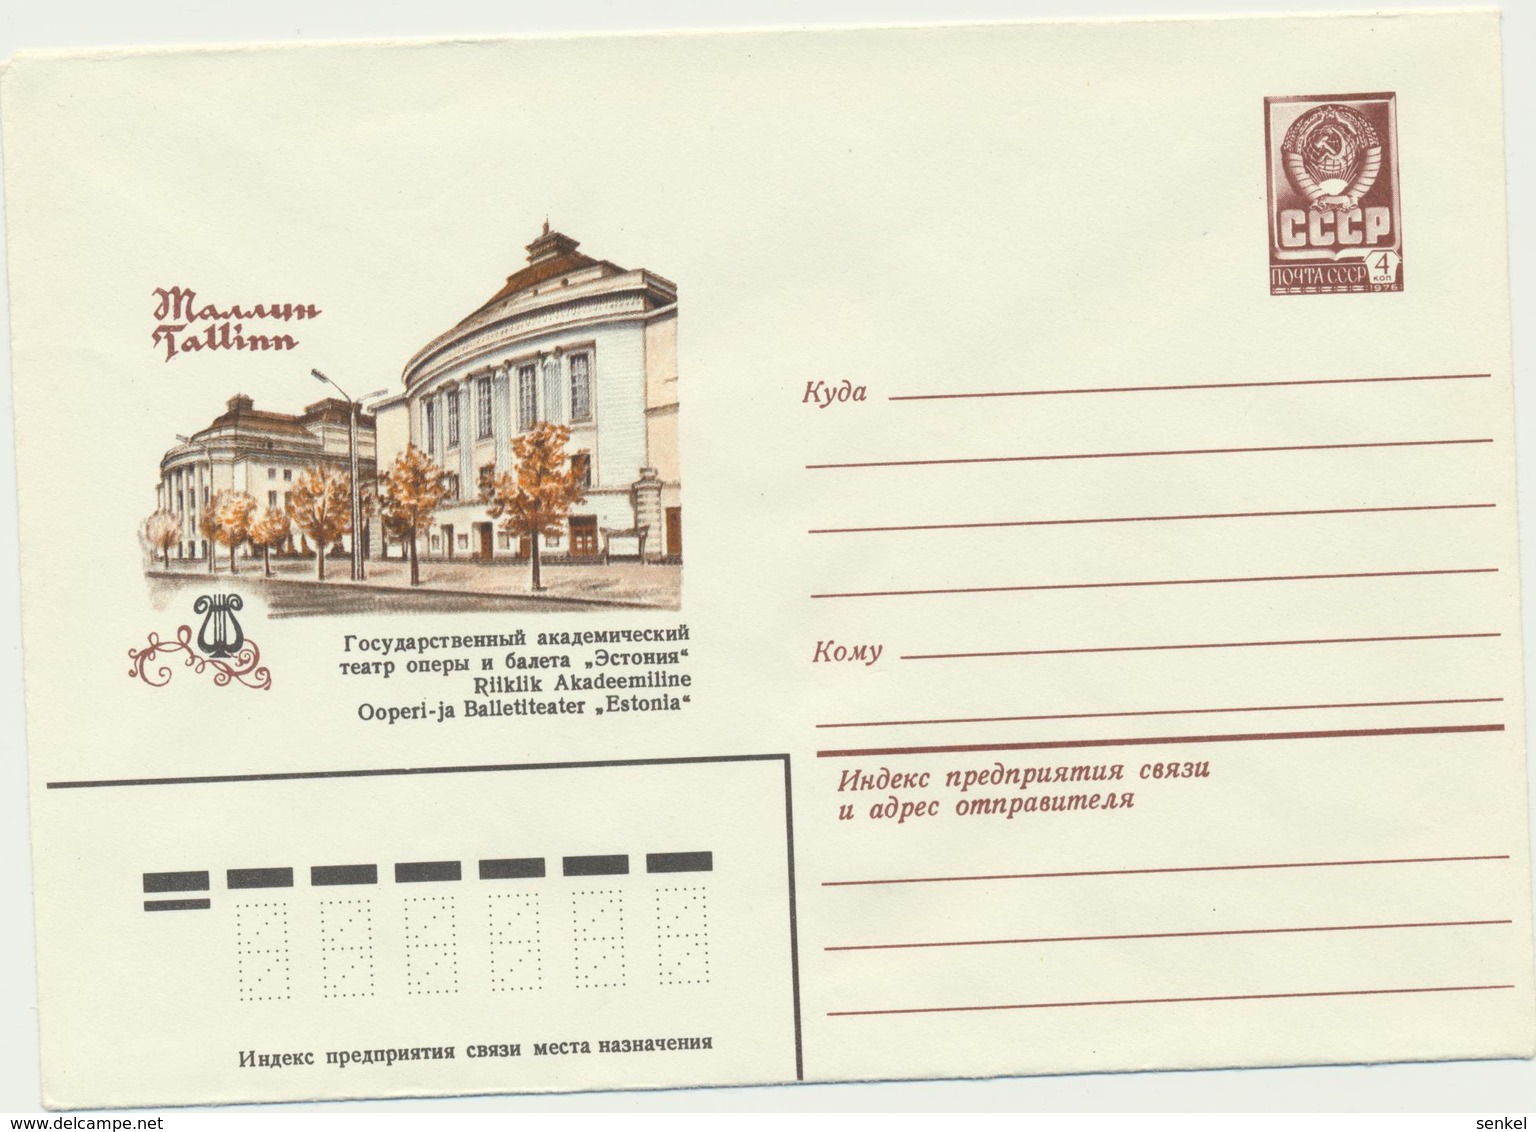 46-158  Russia USSR Estonia Postal Stationery Cover 22.10.1979 Theatre - 1970-79